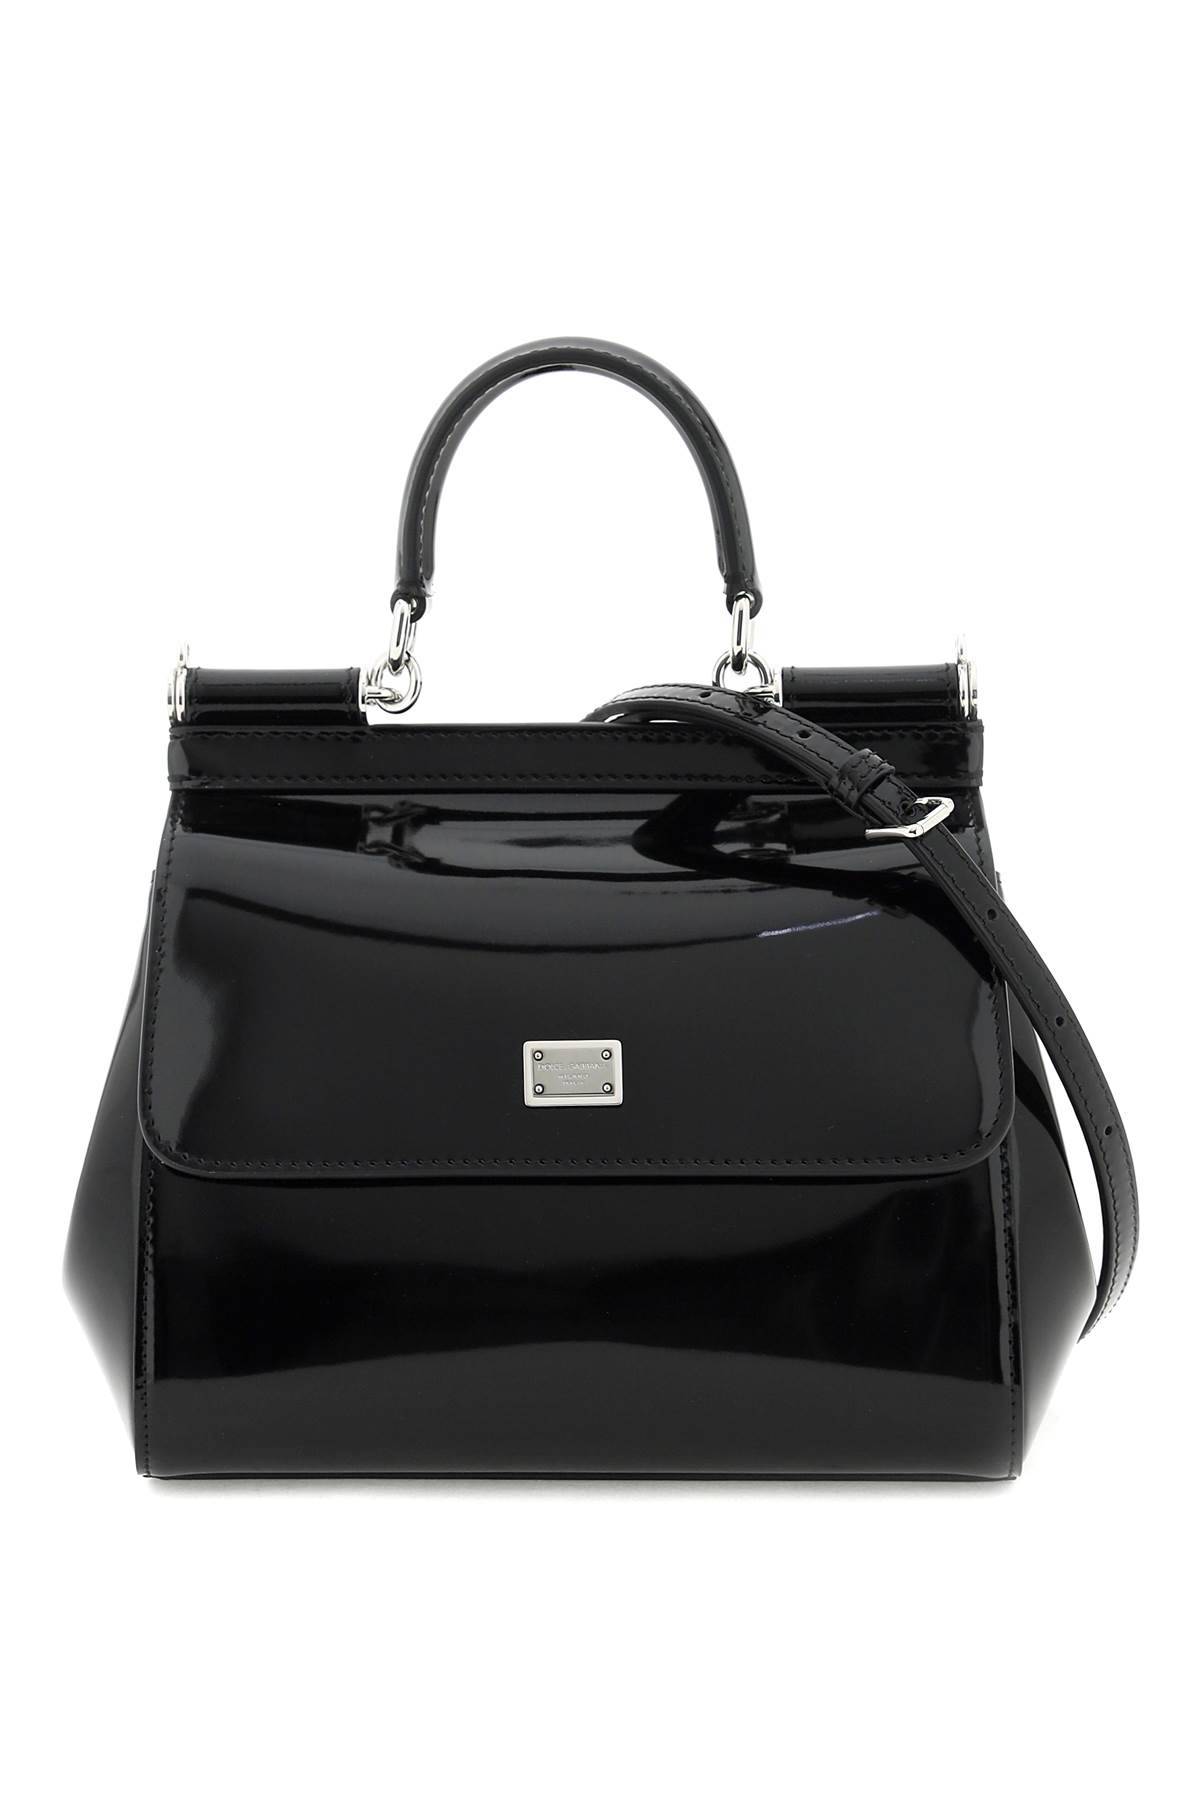 Dolce & Gabbana DOLCE & GABBANA patent leather 'sicily' handbag